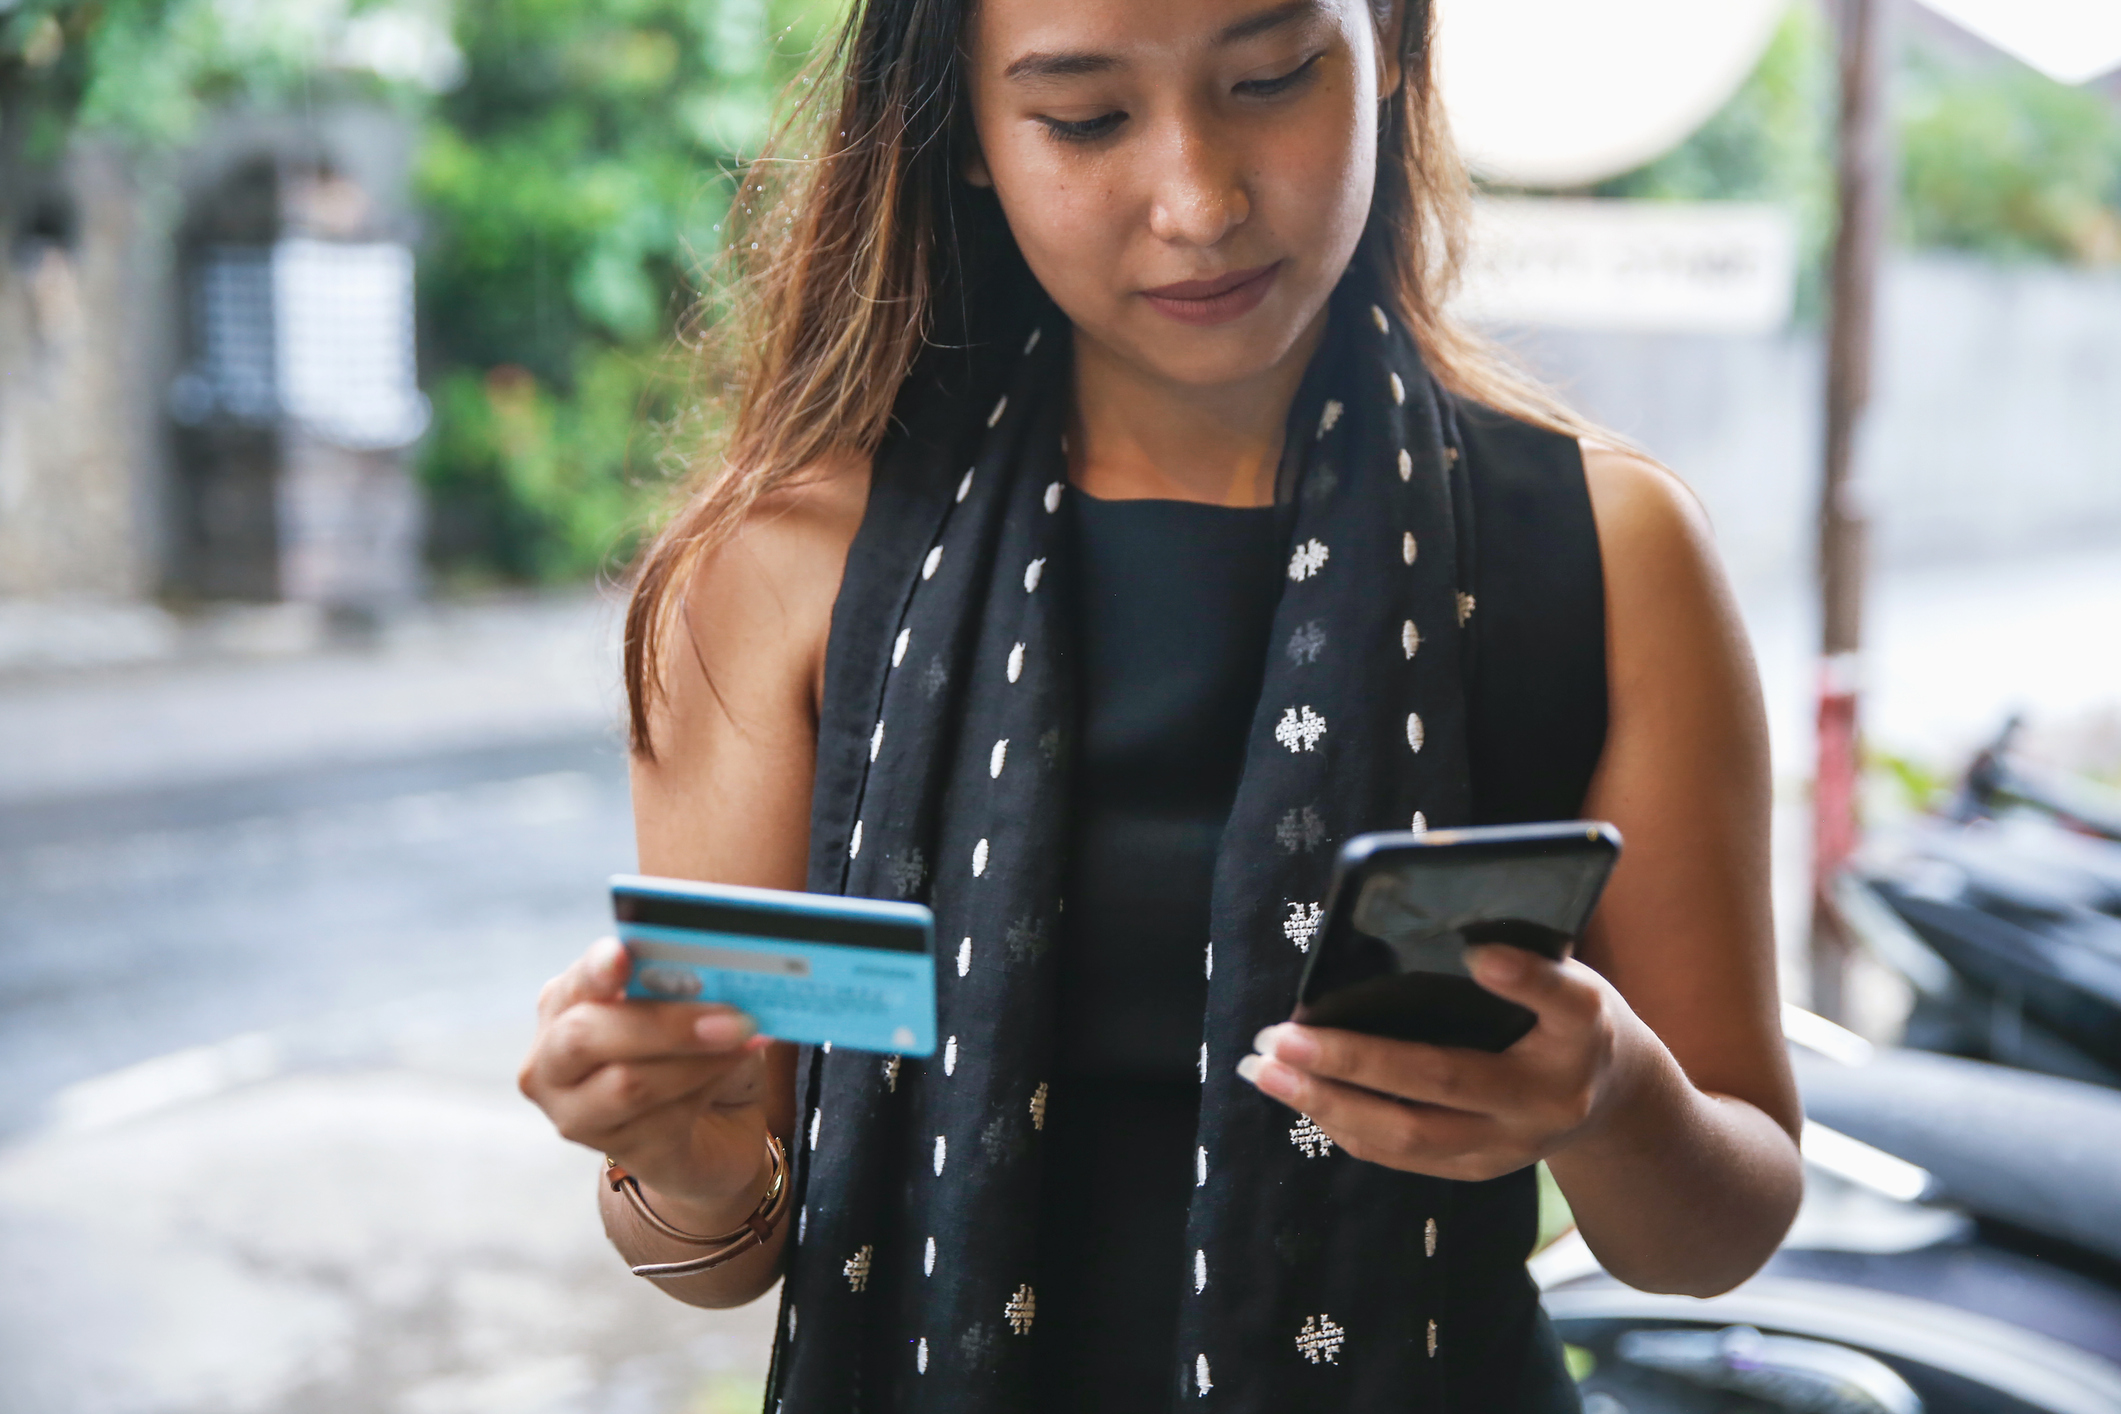 SkorLife memberi konsumen Indonesia kendali atas data kredit • TechCrunch